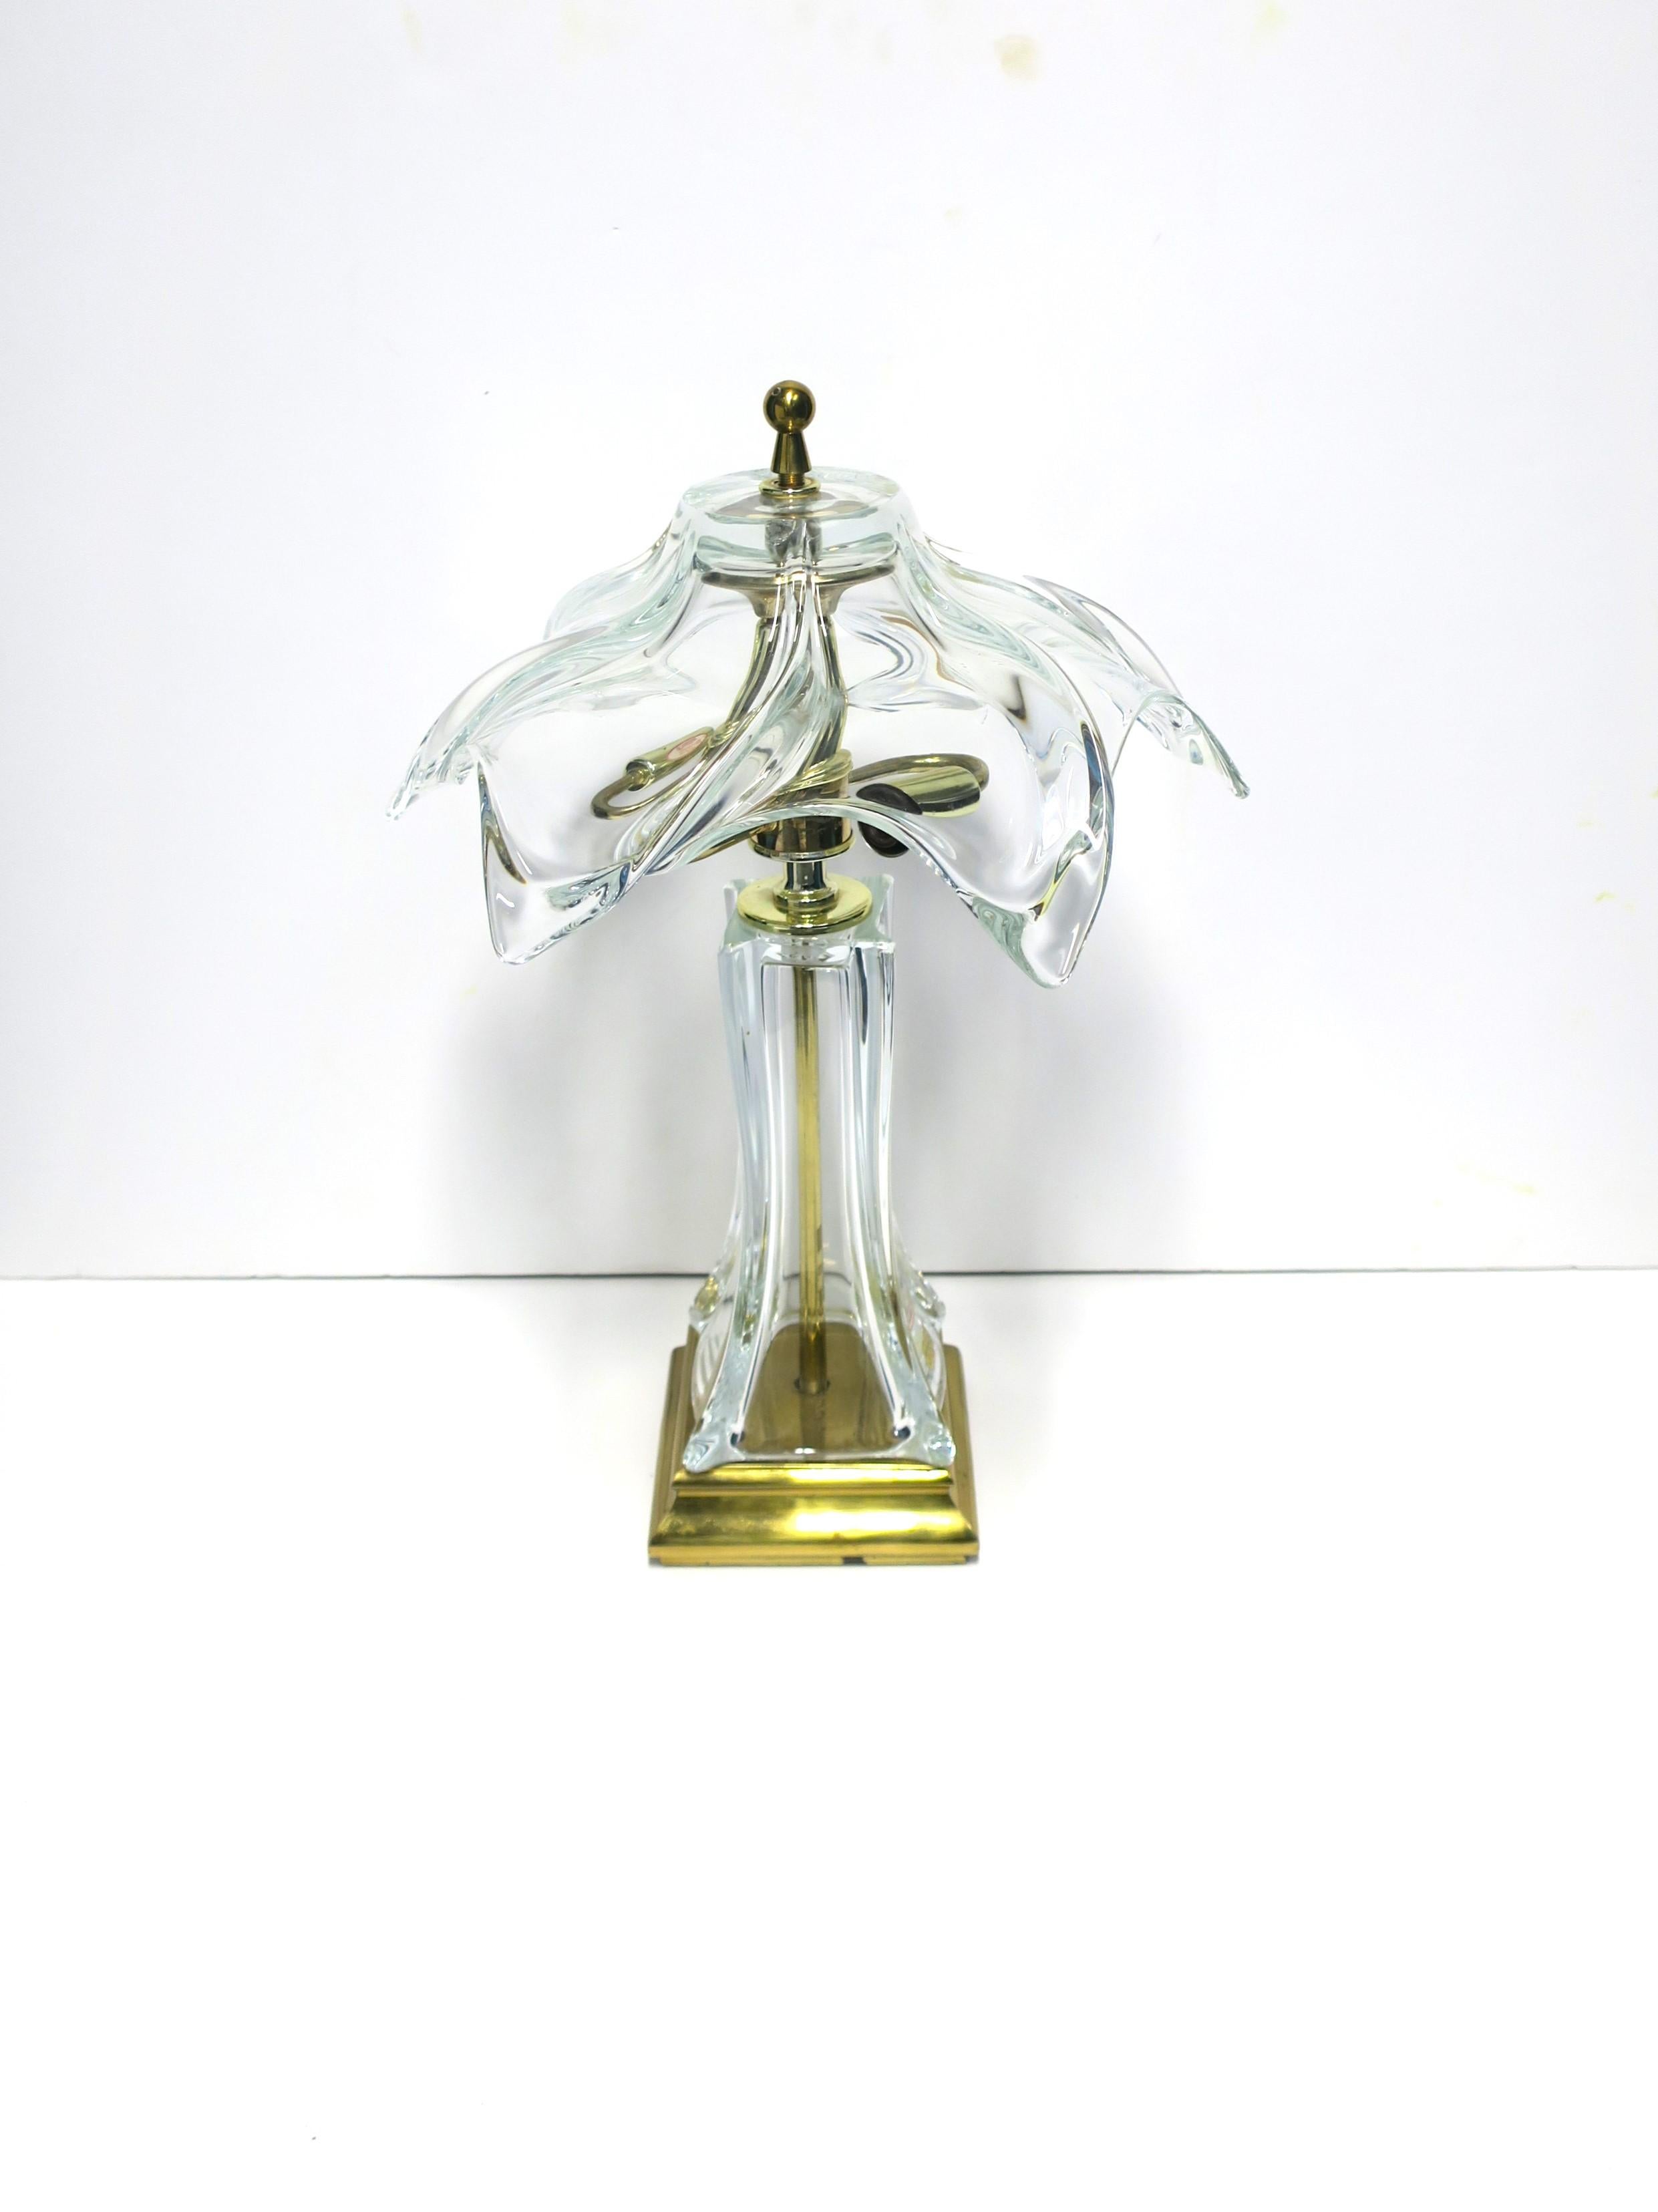 Lampe de bureau ou de table en cristal et laiton de style moderne et Art nouveau, vers les années 1960, Paris, France. La lampe a un abat-jour et un corps en cristal français, une tige en laiton massif au centre et une base en laiton laqué. La lampe